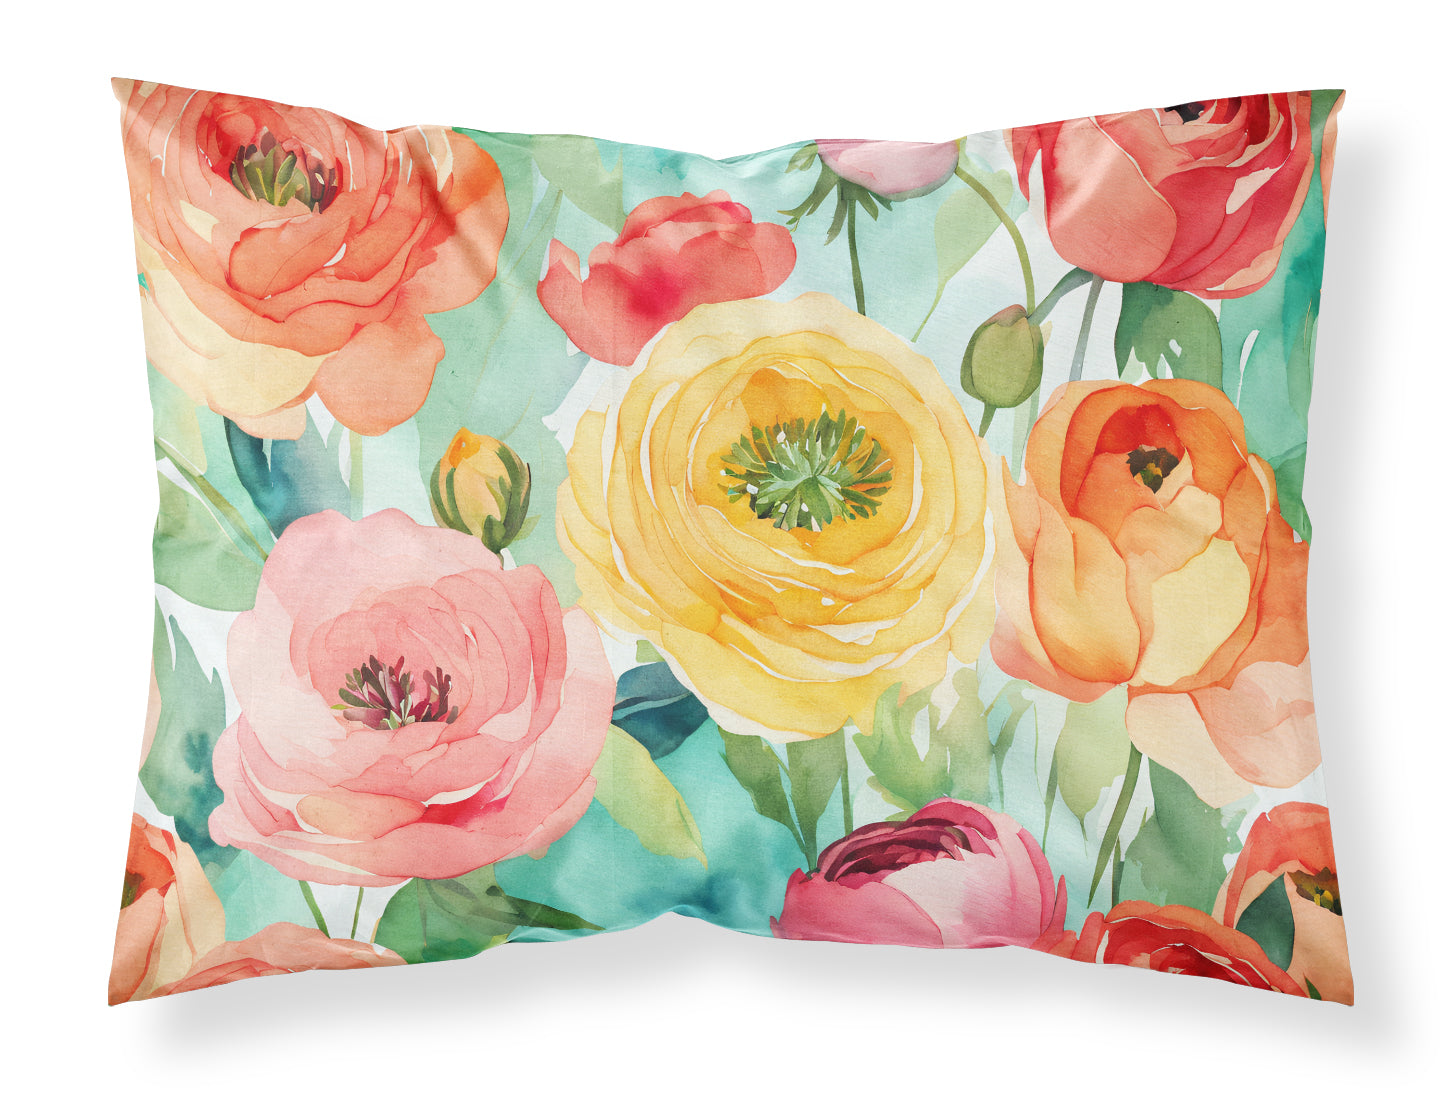 Buy this Ranunculus in Watercolor Fabric Standard Pillowcase